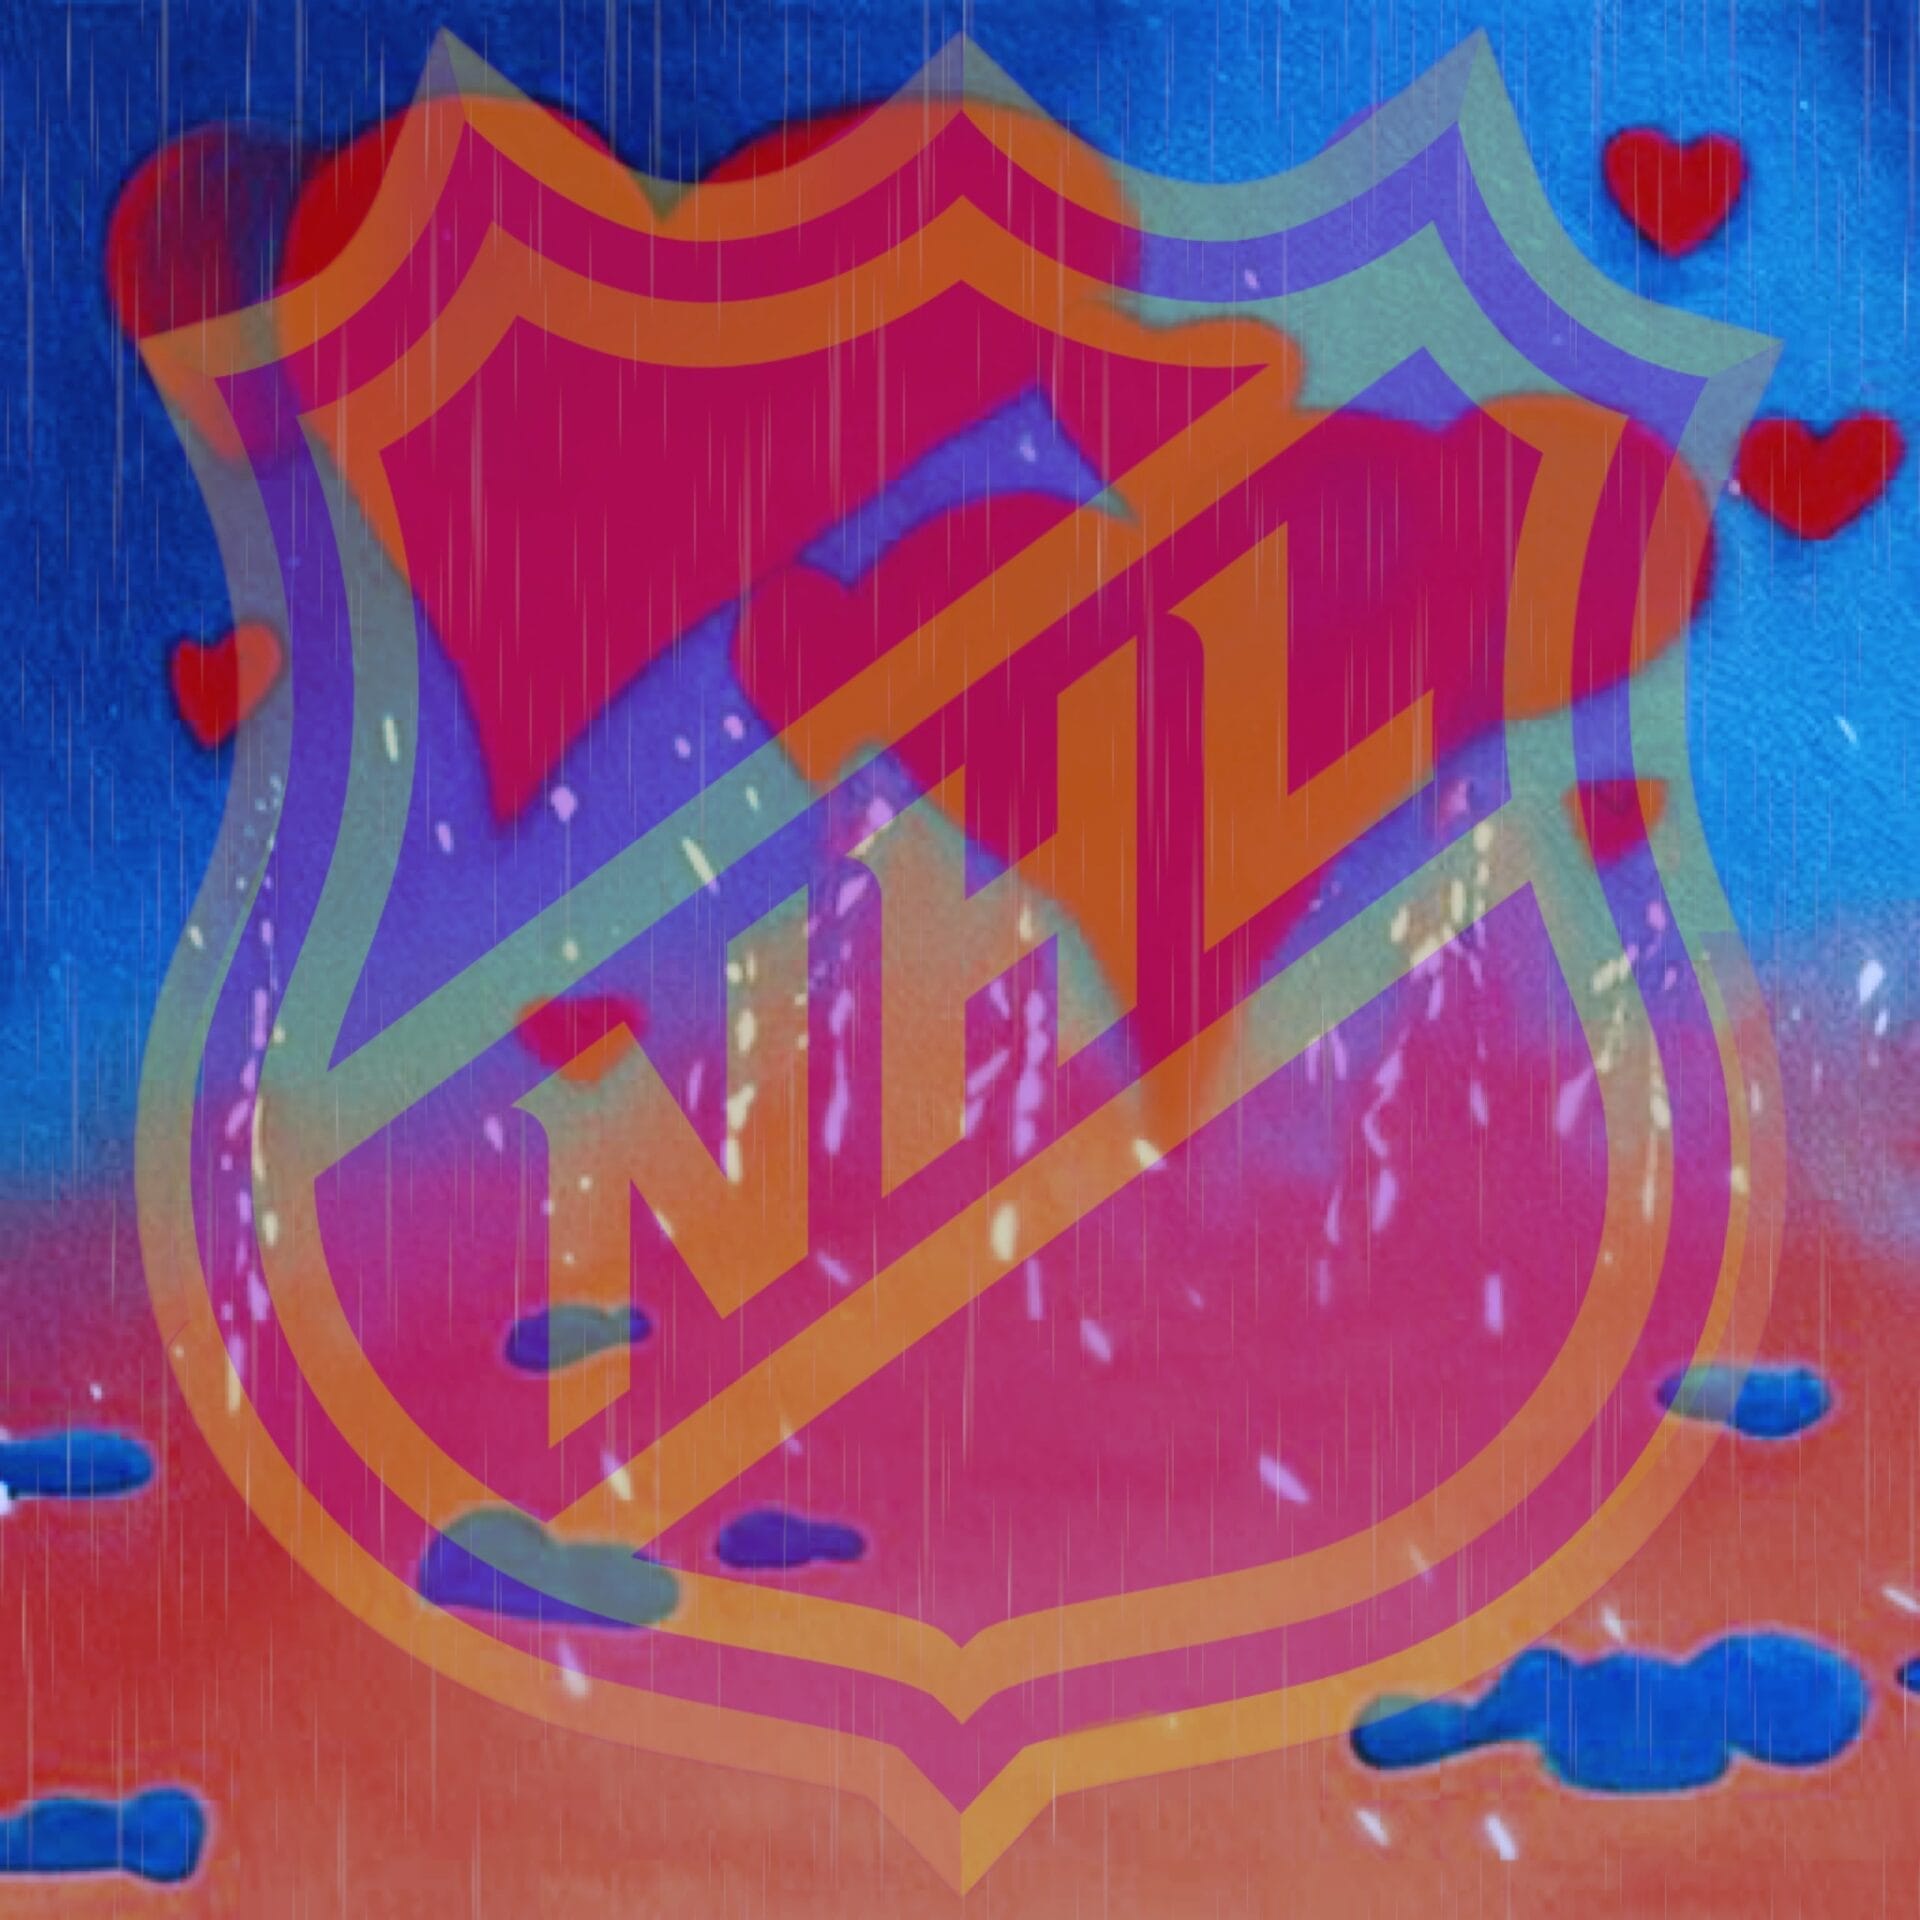 NHL love or hate